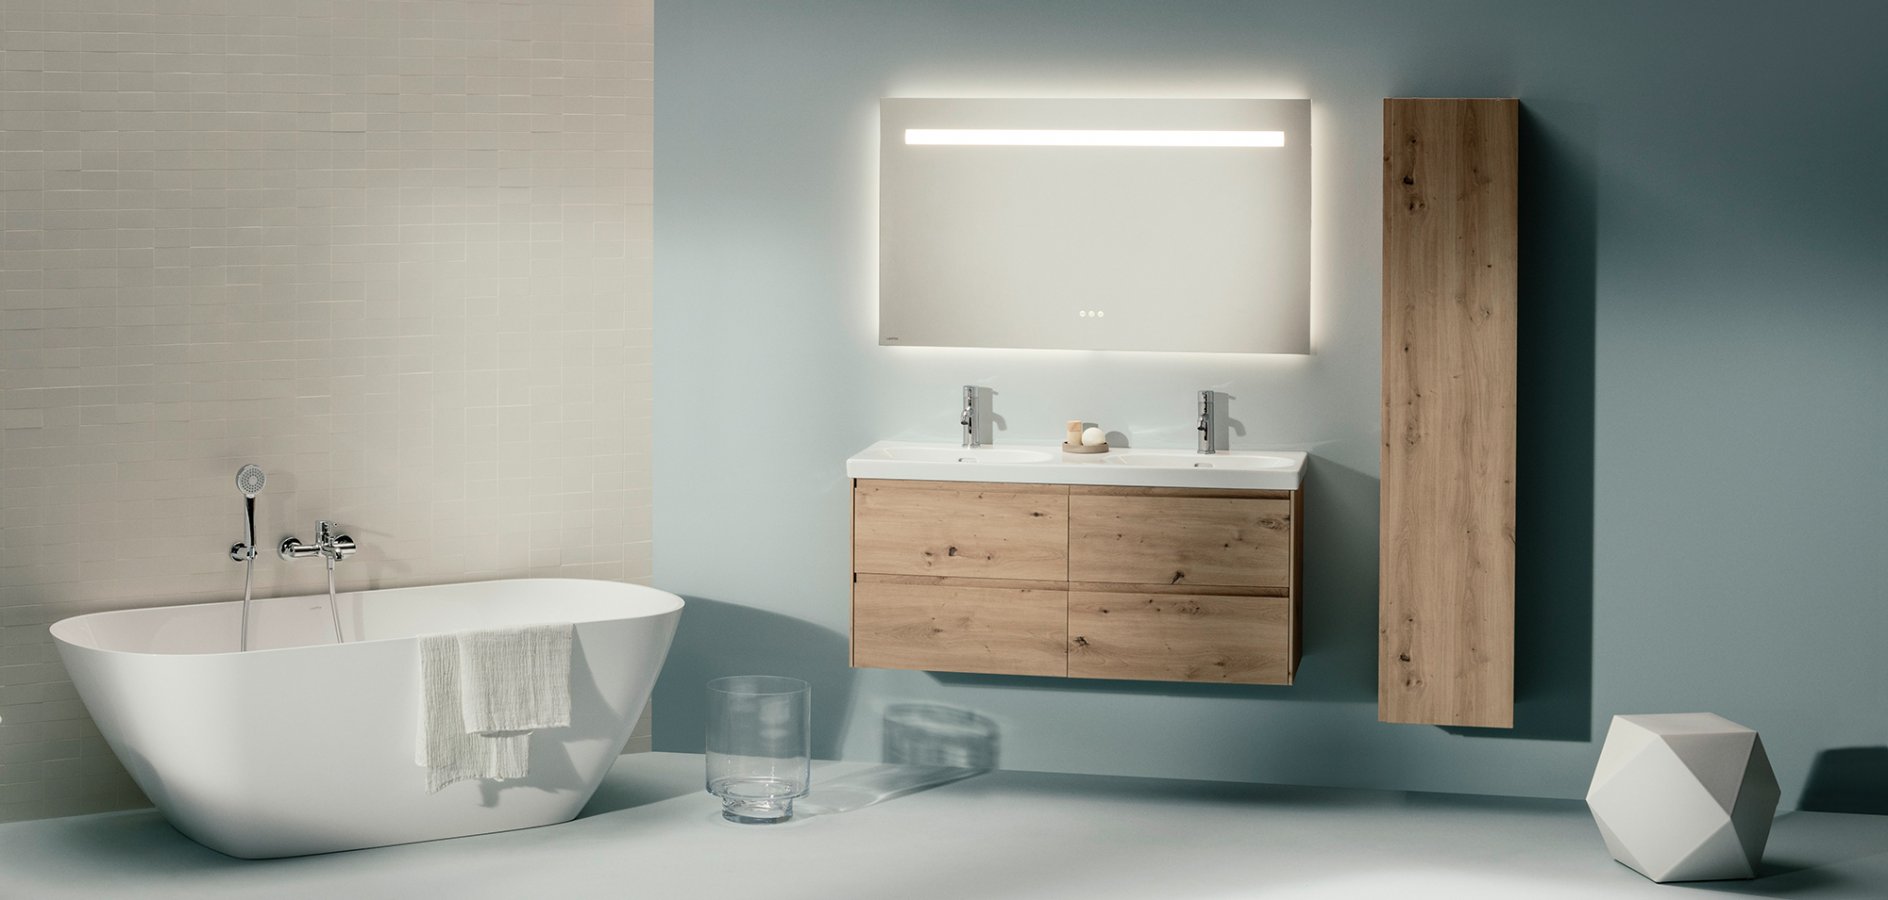 Badezimmer Situation, freistehende Badewanne, Waschtisch mit Holzmöbel, hellgrauer Hintergrund